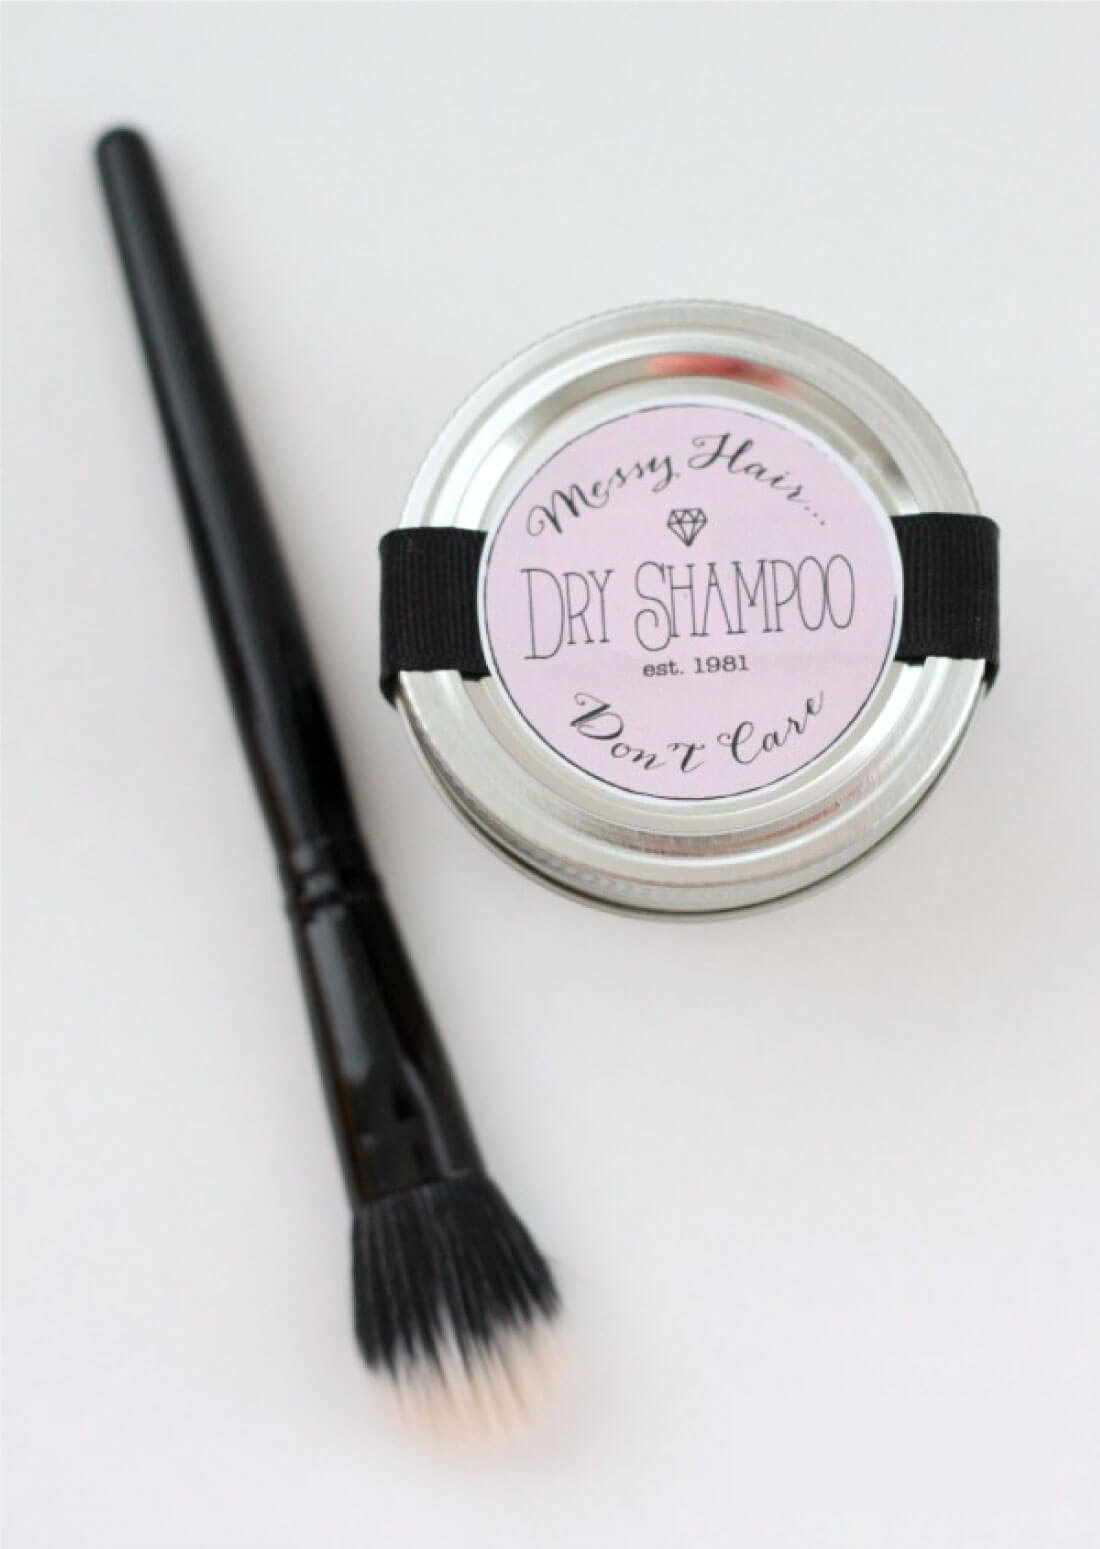 DIY Dry Shampoo - make your own dry shampoo with just 2 ingredients! via www.thirtyhandmadedays.com